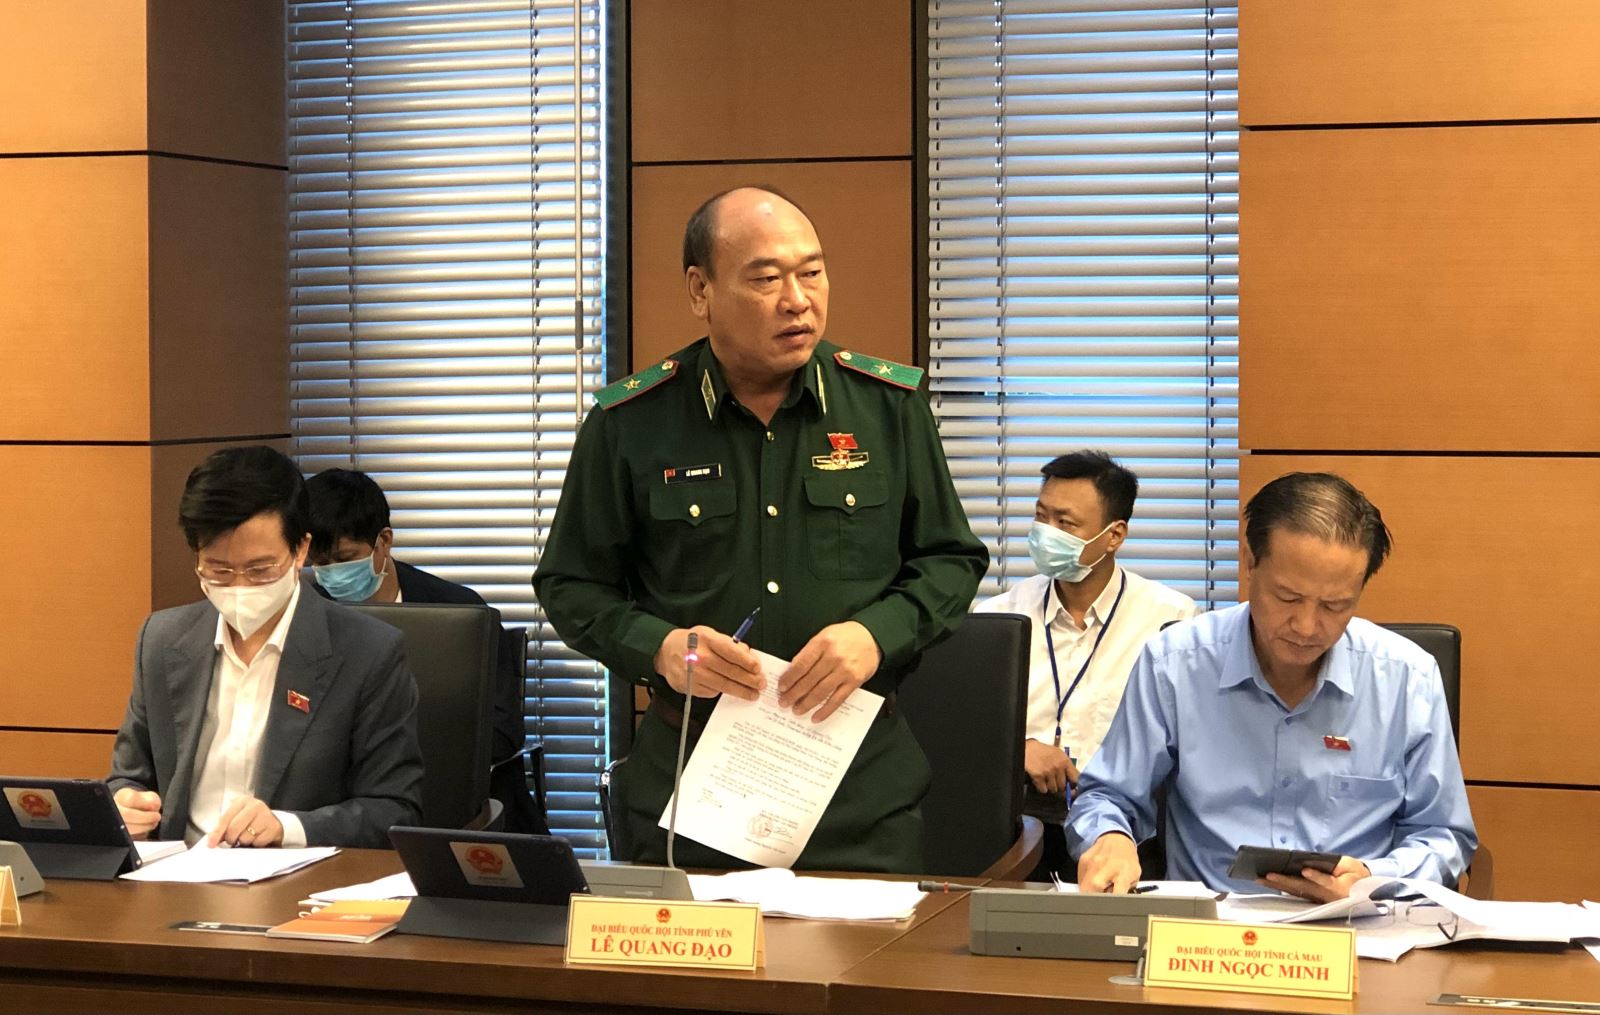 Thiếu tướng Lê Quang Đạo, Phó Tư lệnh kiêm Tham mưu trưởng Bộ đội Biên phòng (Bộ Quốc phòng) được Thủ tướng bổ nhiệm giữ chức Tư lệnh Cảnh sát biển Việt Nam (Bộ Quốc phòng).